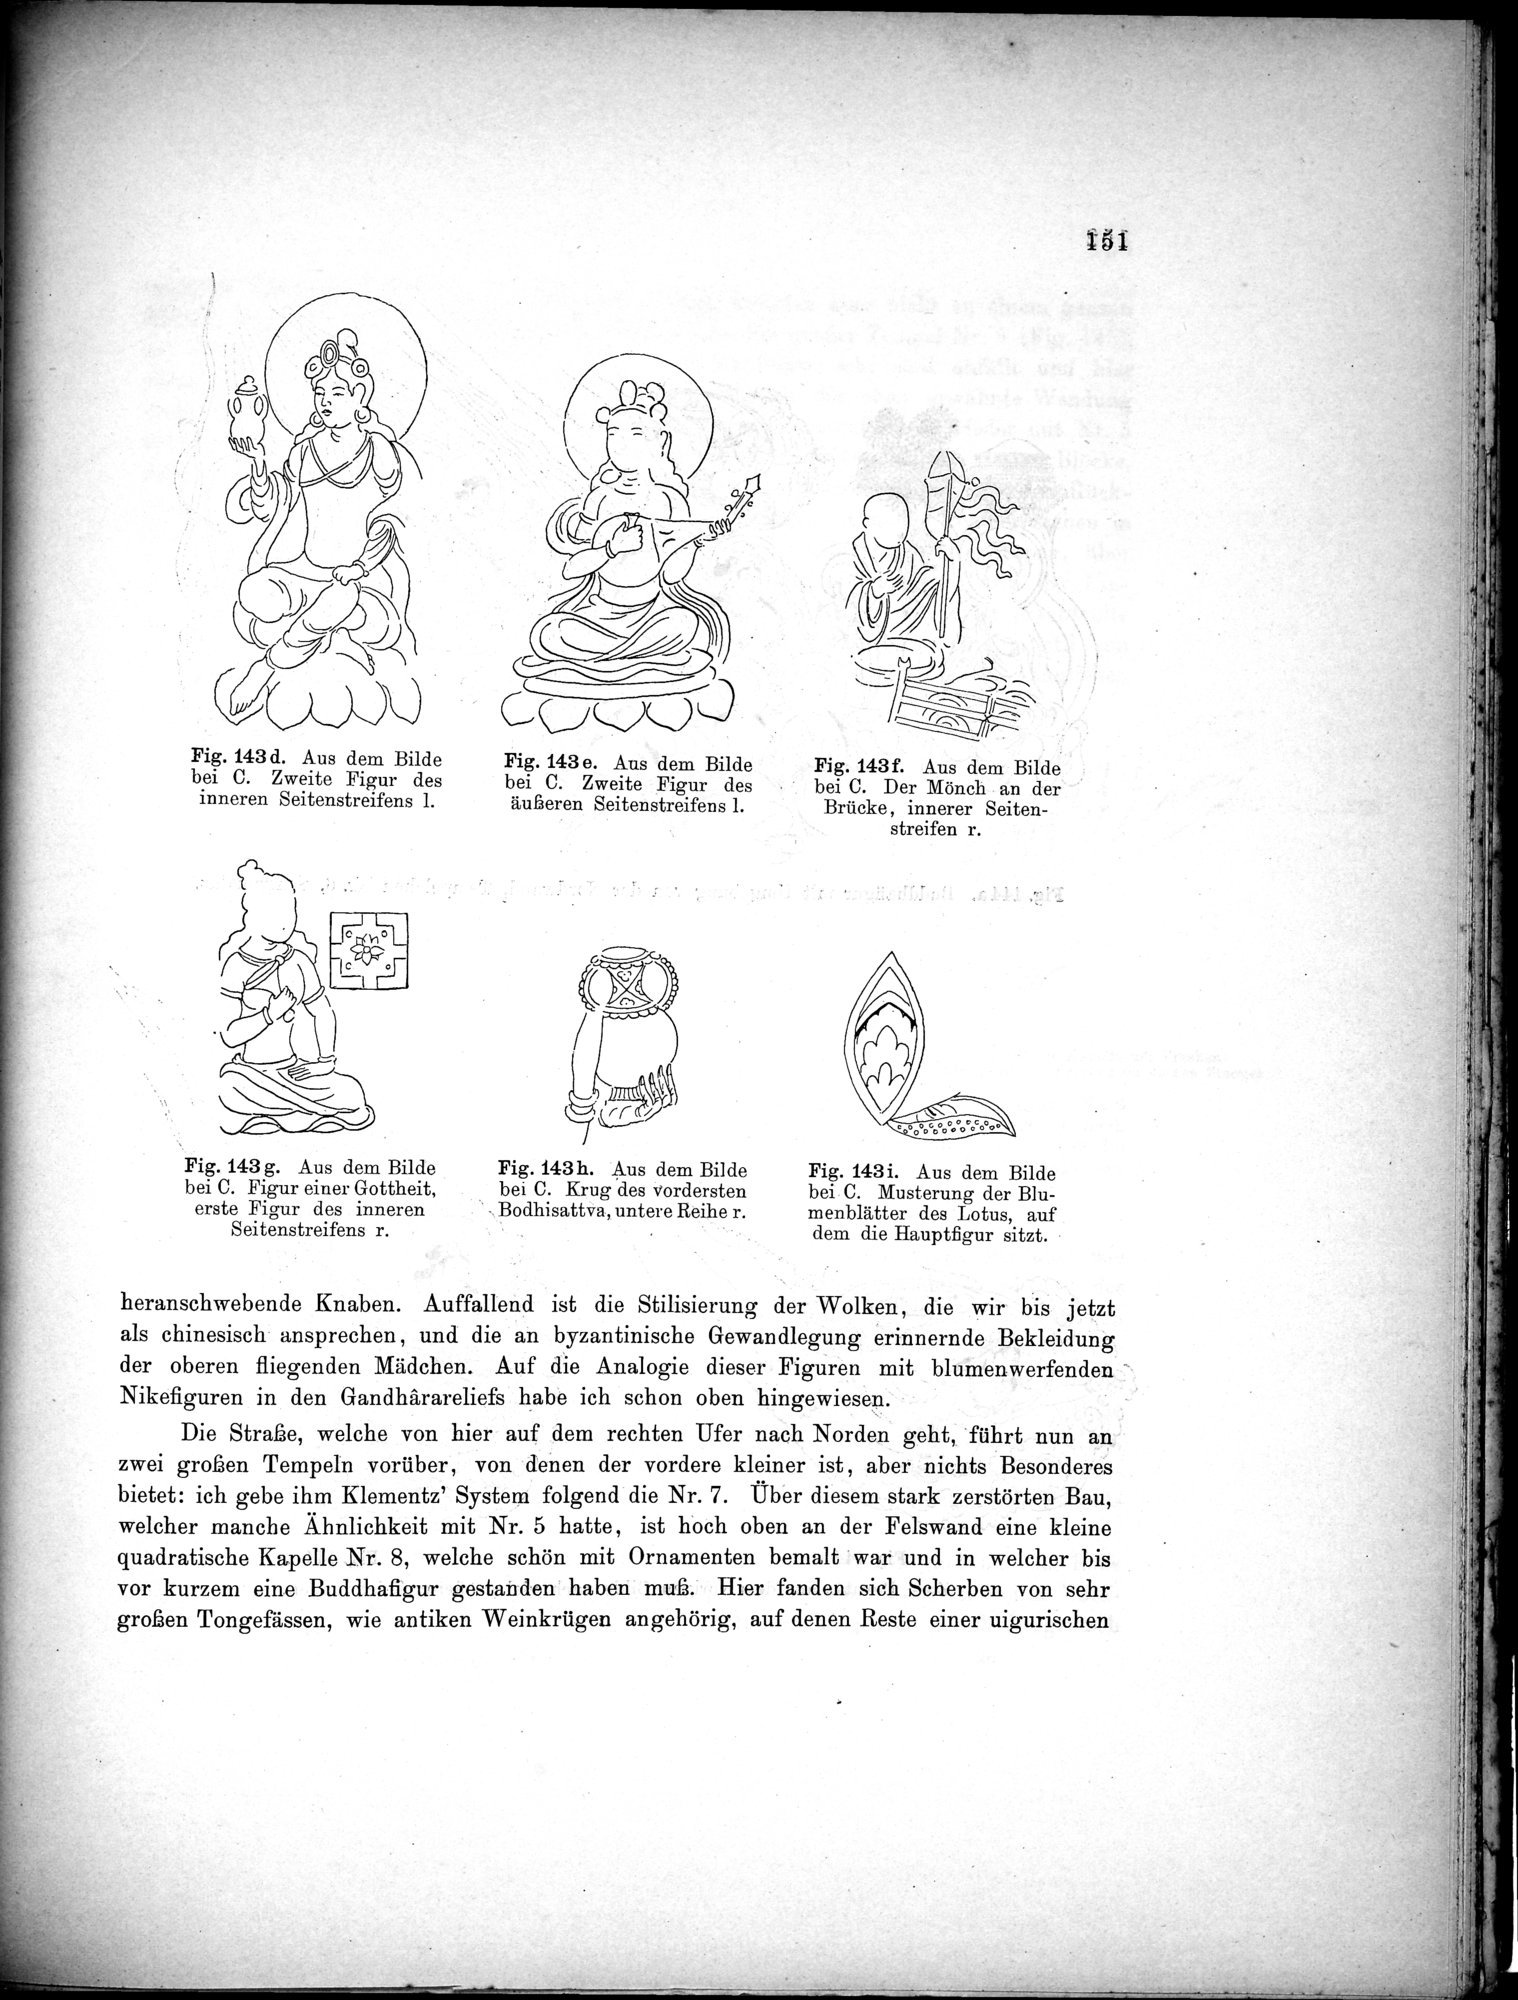 Bericht über archäologische Arbeiten in Idikutschari und Umgebung im Winter 1902-1903 : vol.1 / Page 161 (Grayscale High Resolution Image)